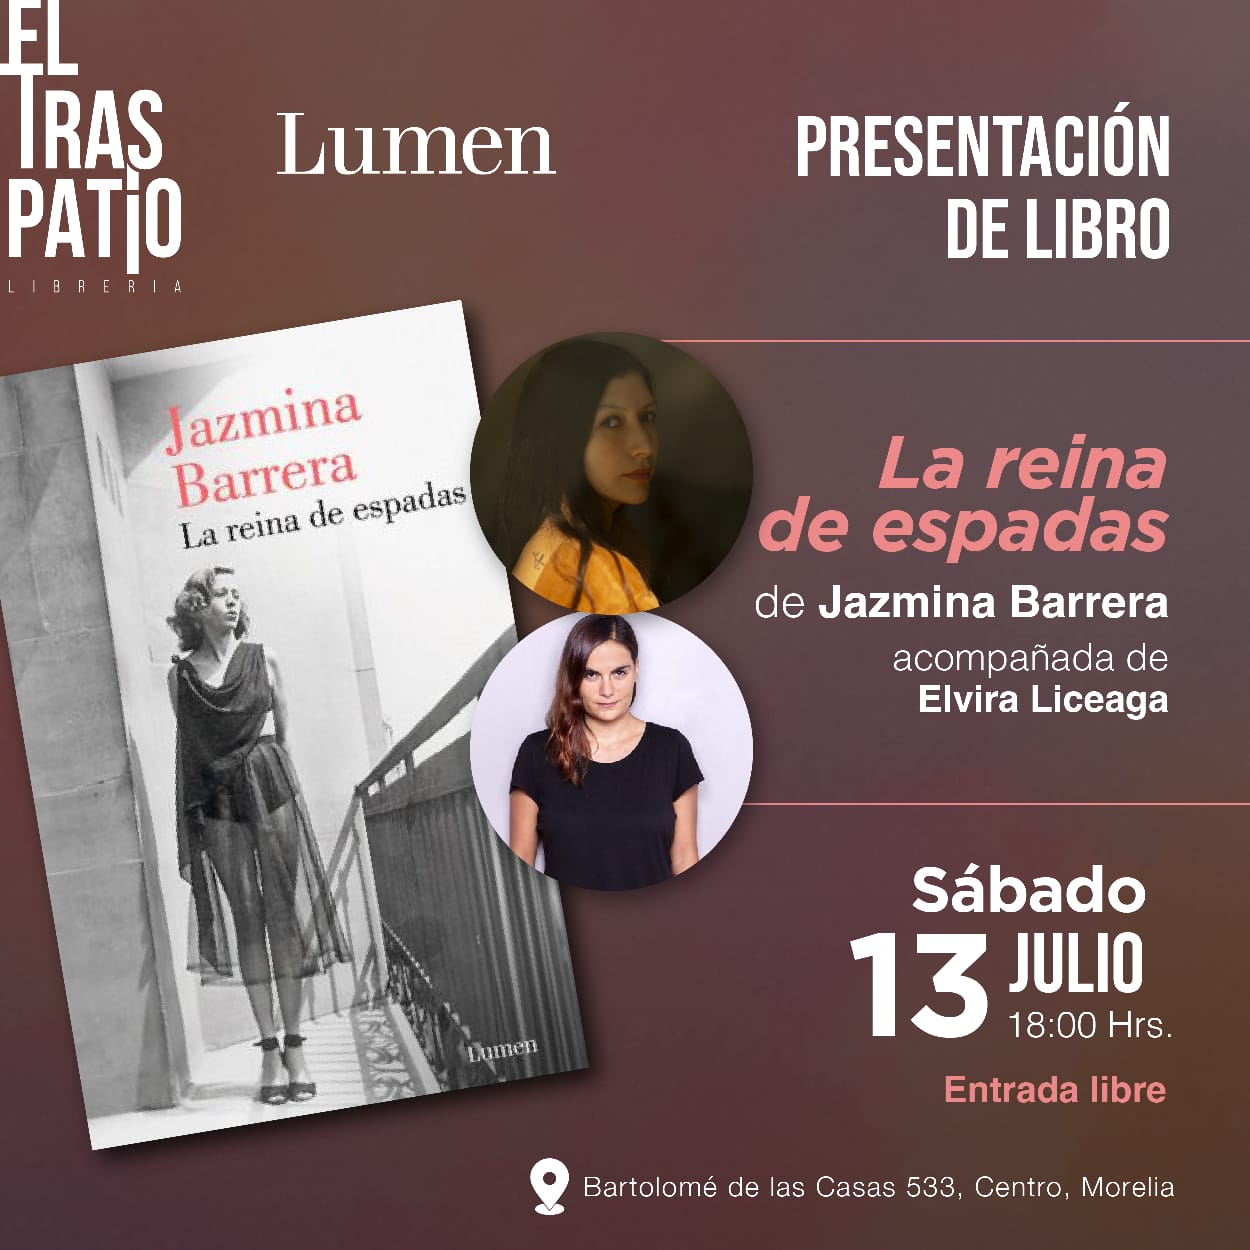 Jazmina Barrera presentará su más reciente libro en la librería “El Traspatio”